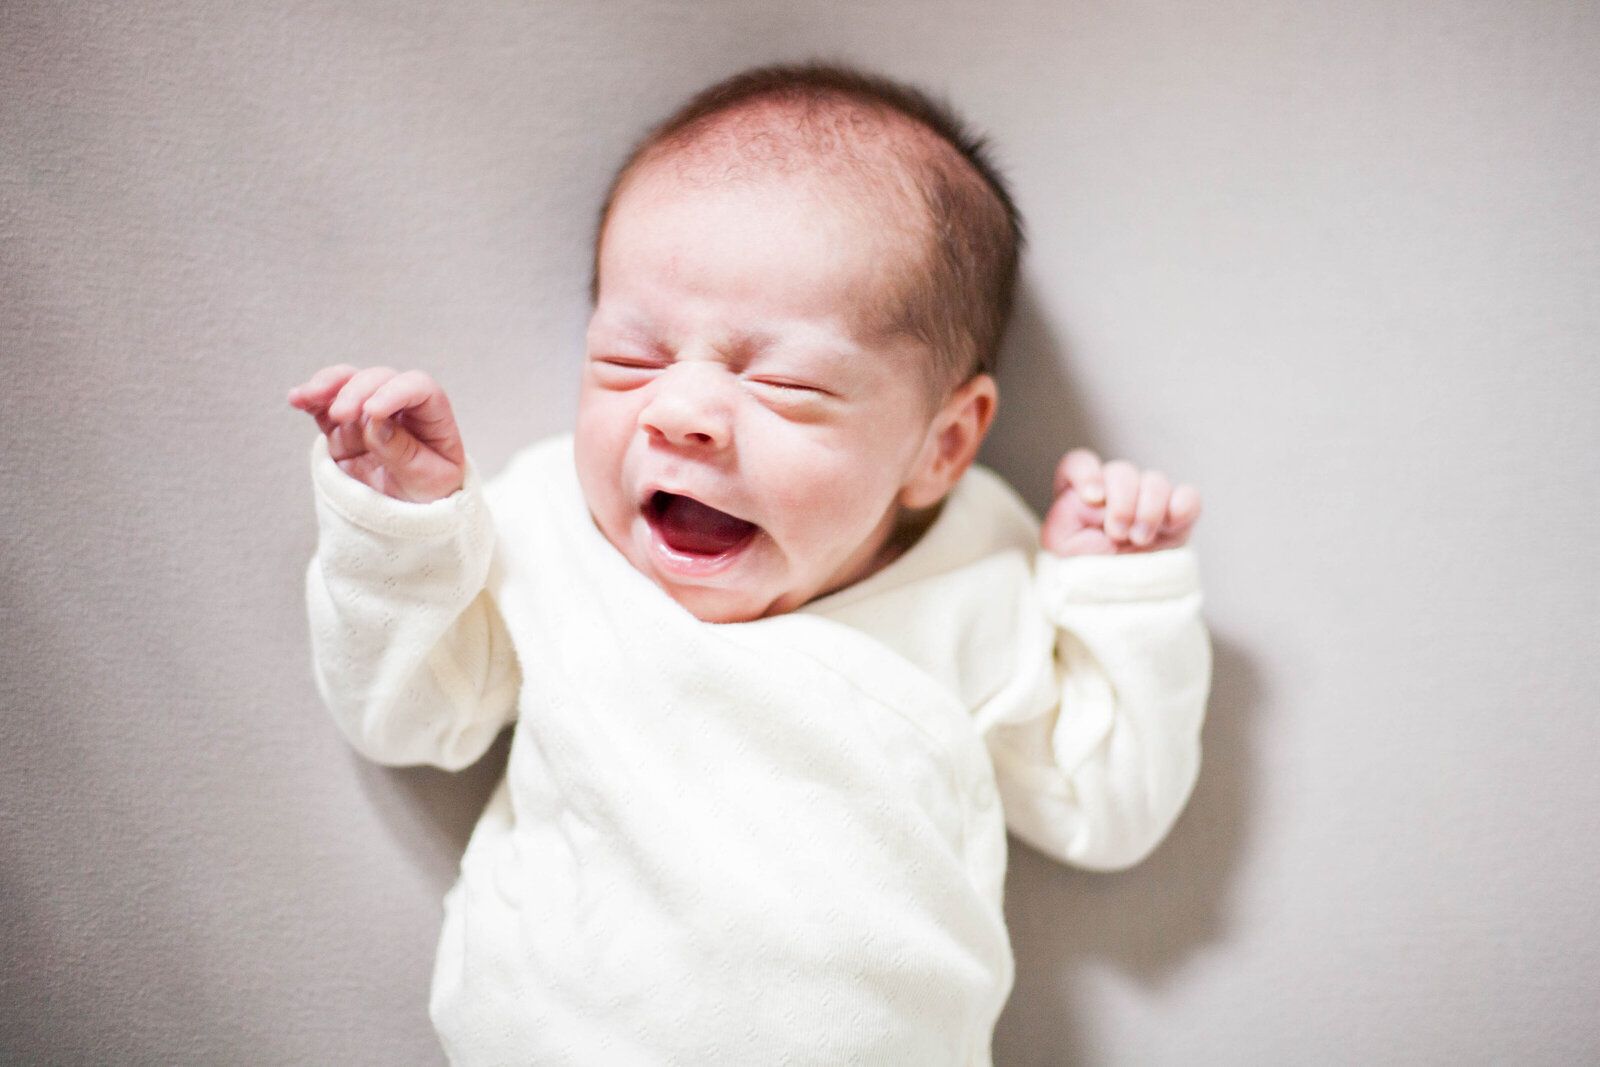 A baby wearing white yawning.